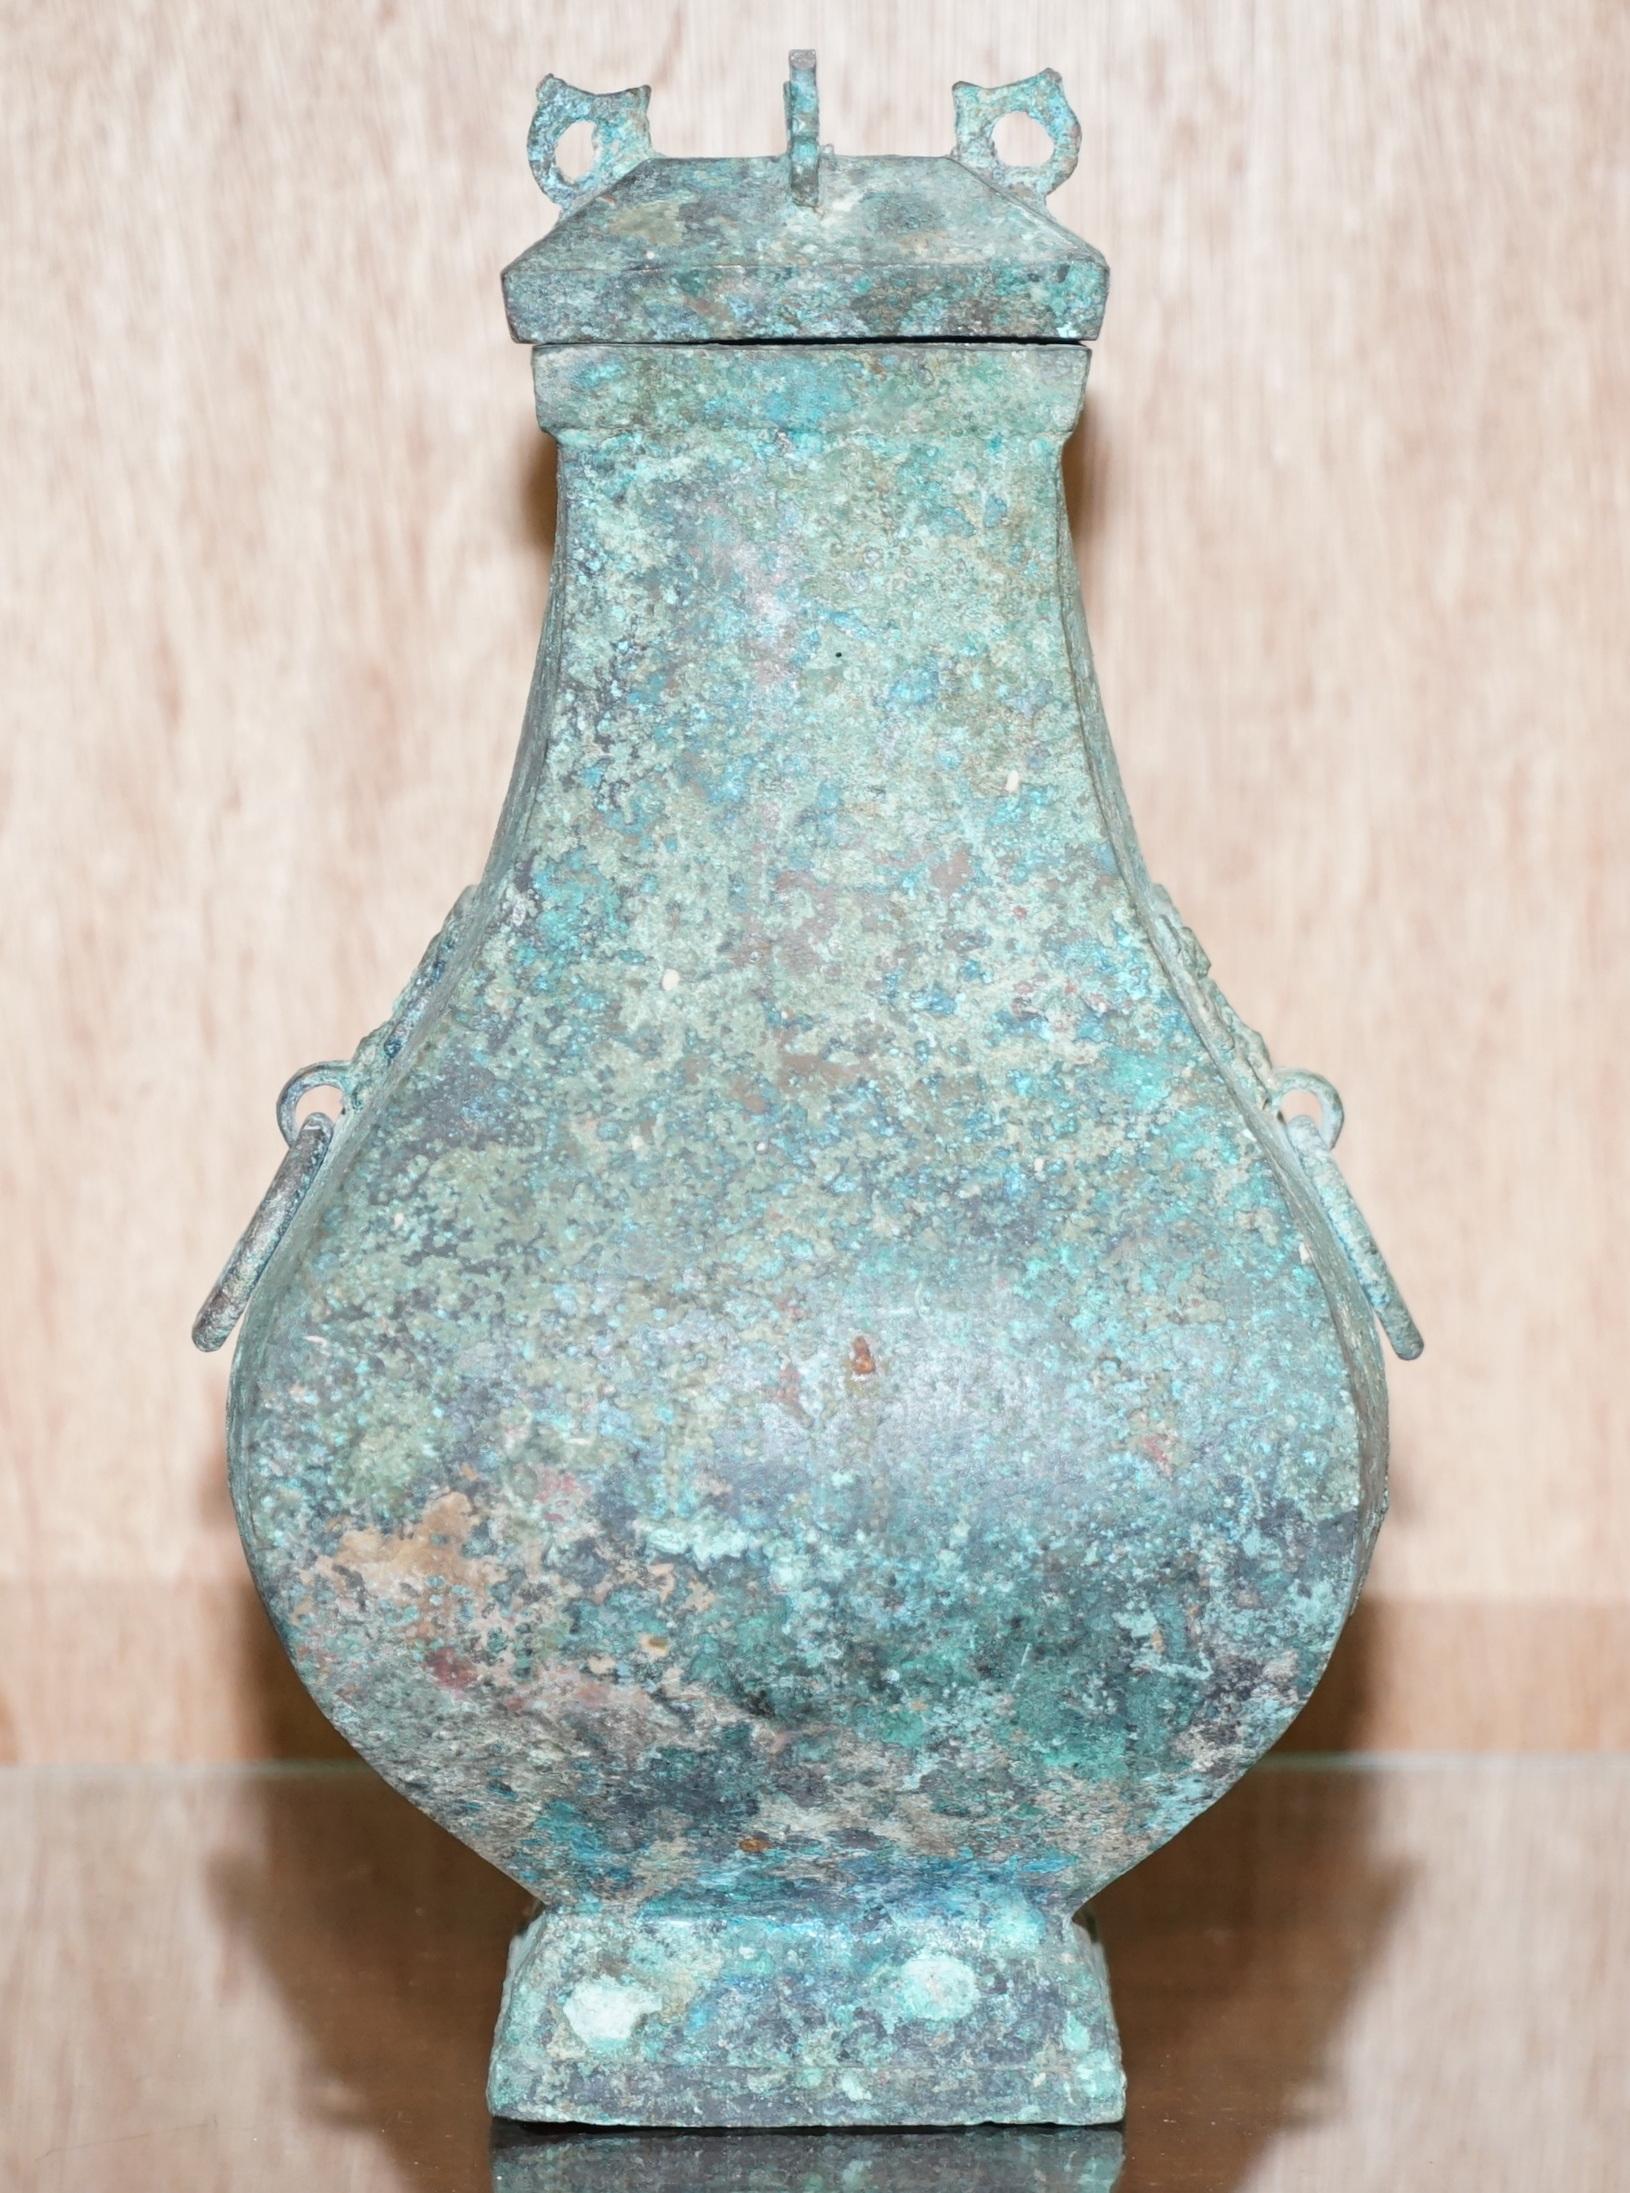 Nous avons le plaisir d'offrir à la vente ce vase à vin rituel et son couvercle en bronze de qualité muséale, Fanghu, dynastie Han 206BC-220AD, avec des poignées en forme de masque Taotie - patine vert olive et roussâtre avec des taches